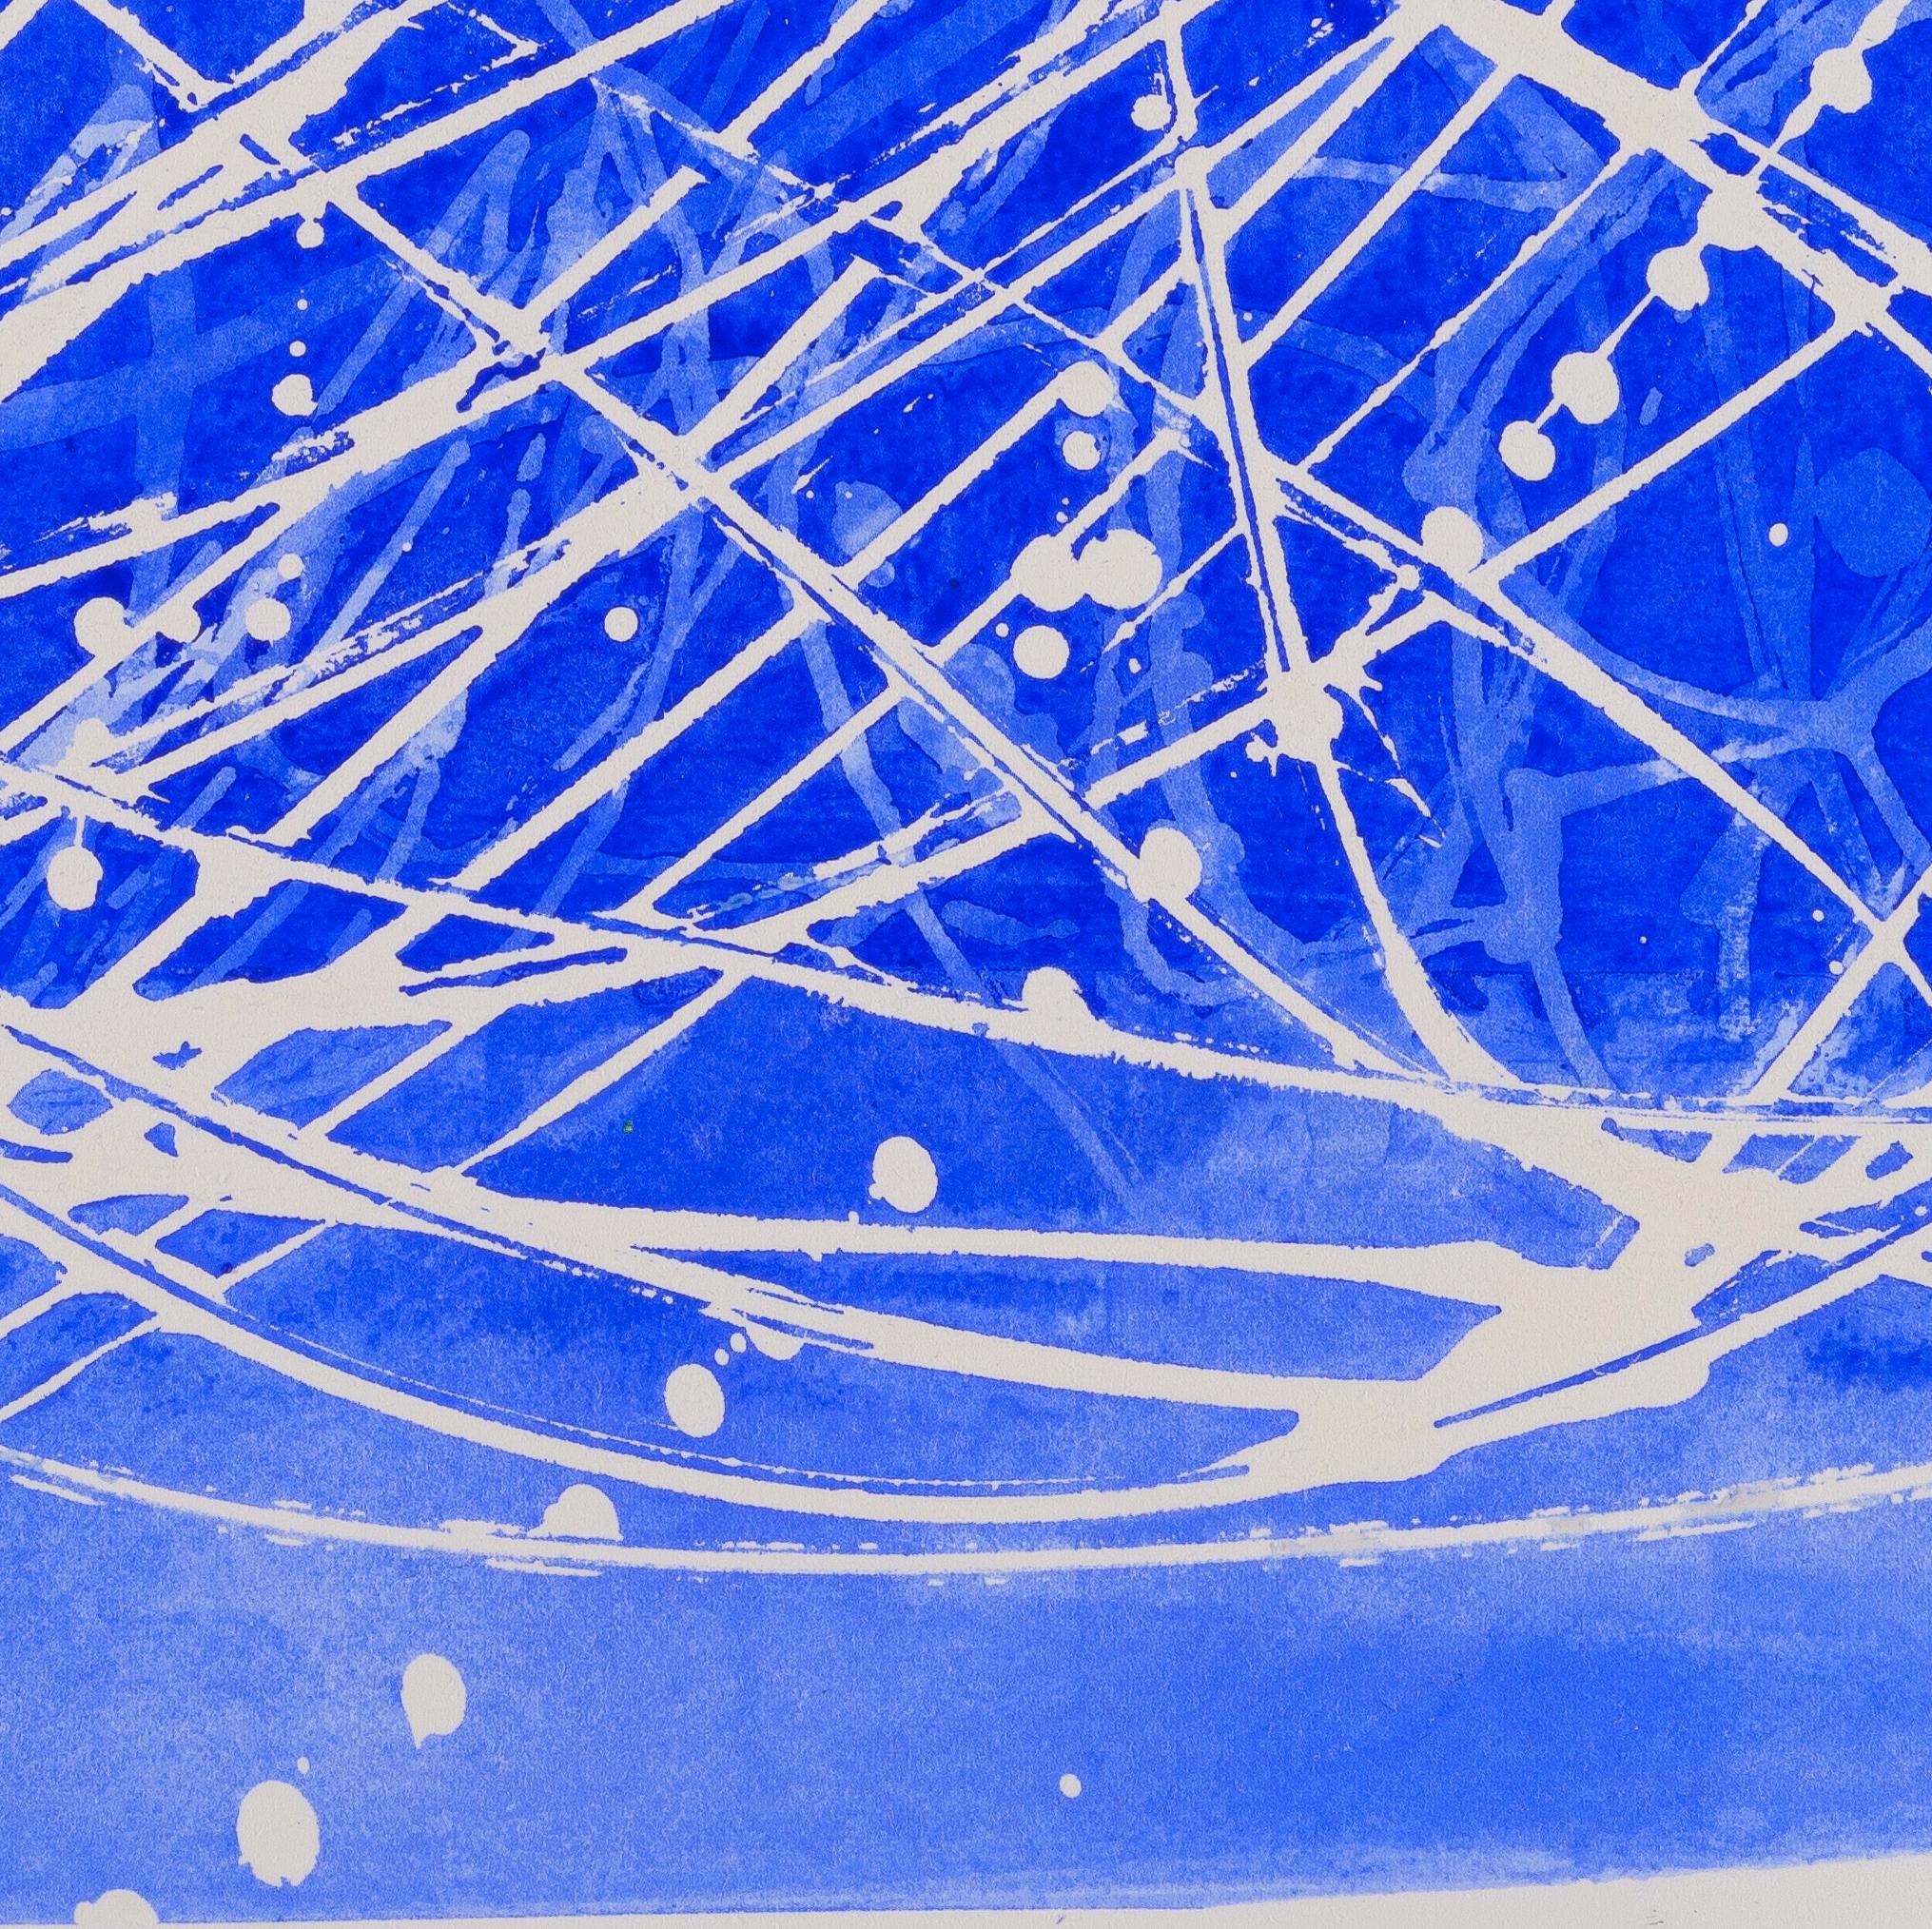 02H20: Blau-weißes abstraktes expressionistisches Gemälde/Zeichnung auf Papier, gerahmt, 02H20 – Art von Paula Cahill